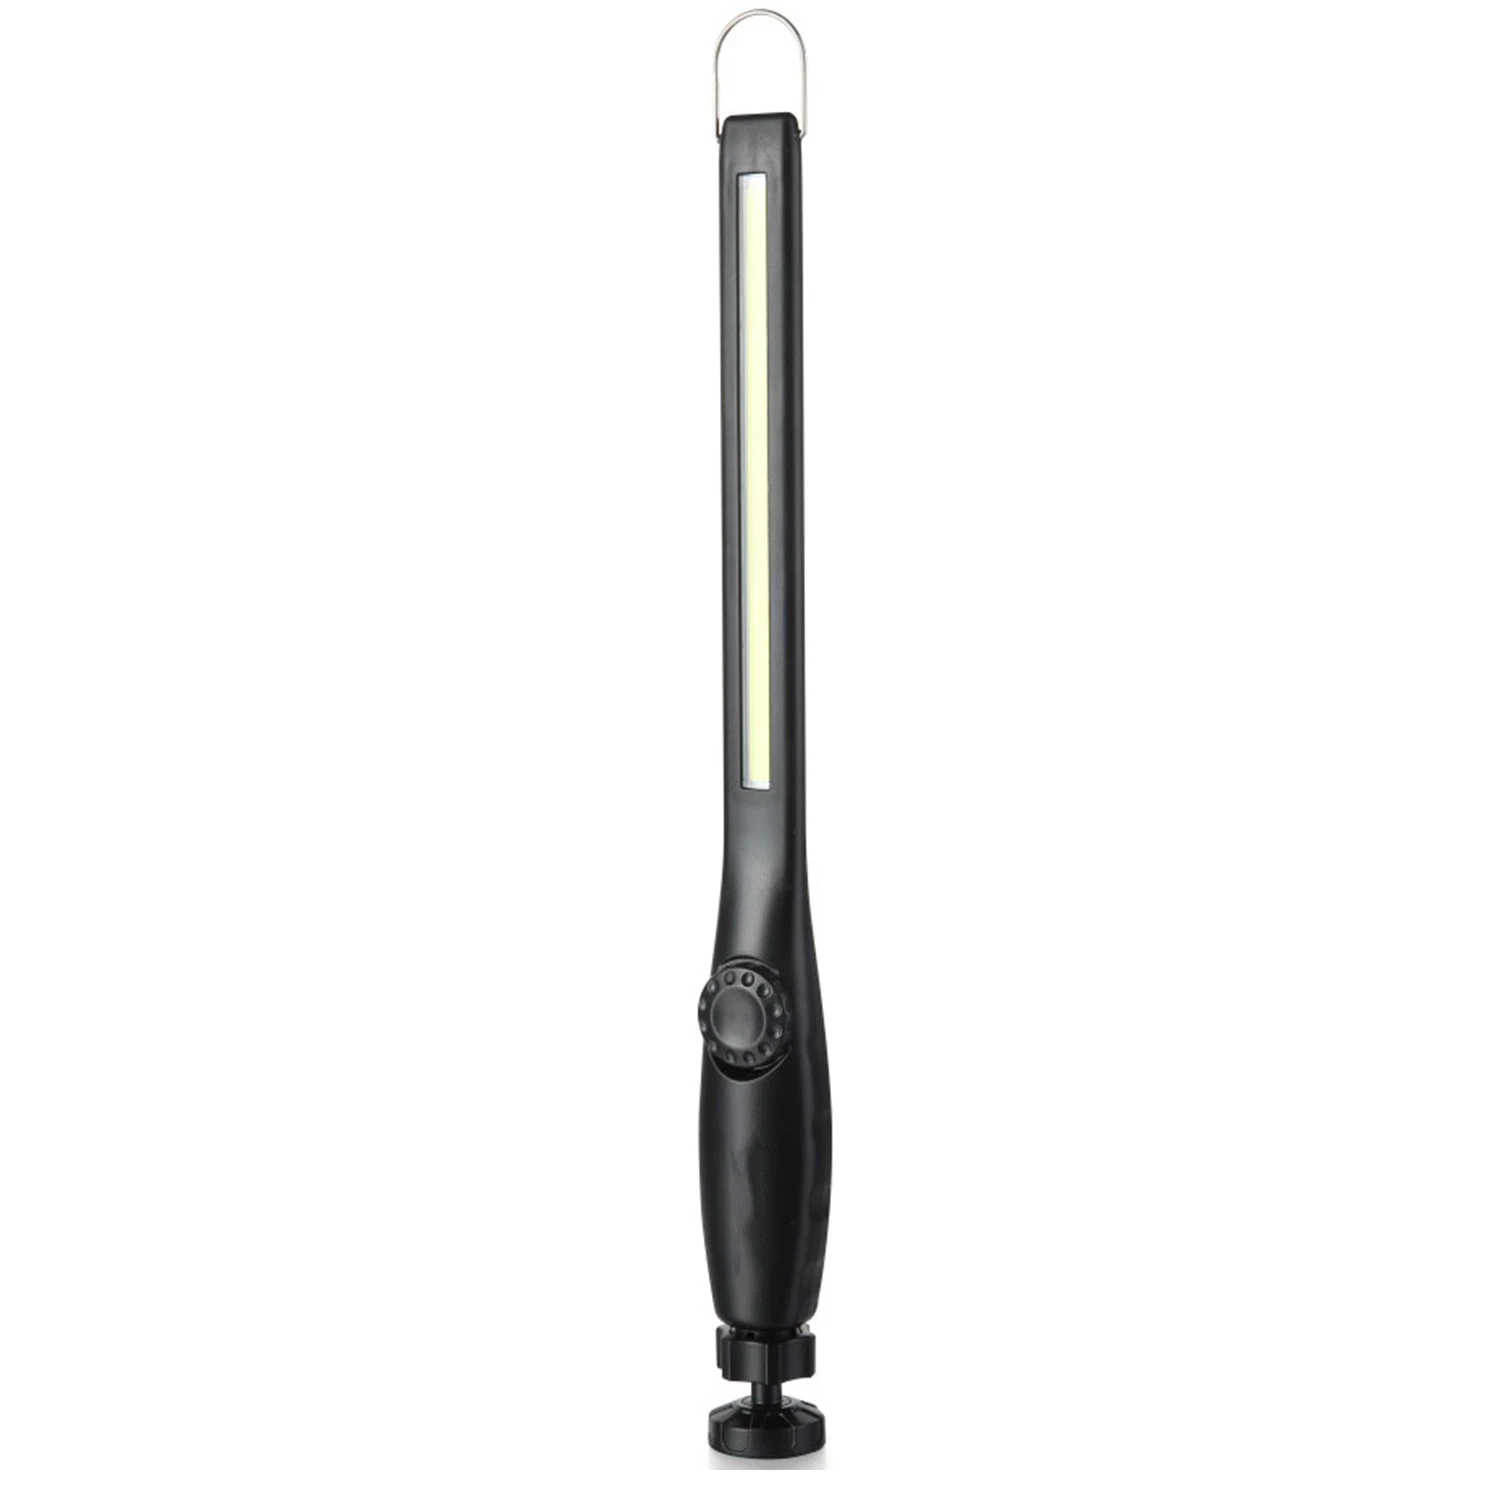 Lampe de travail LED rechargeable de 750 lumens avec une portée de 360 degrés et une base magnétique.